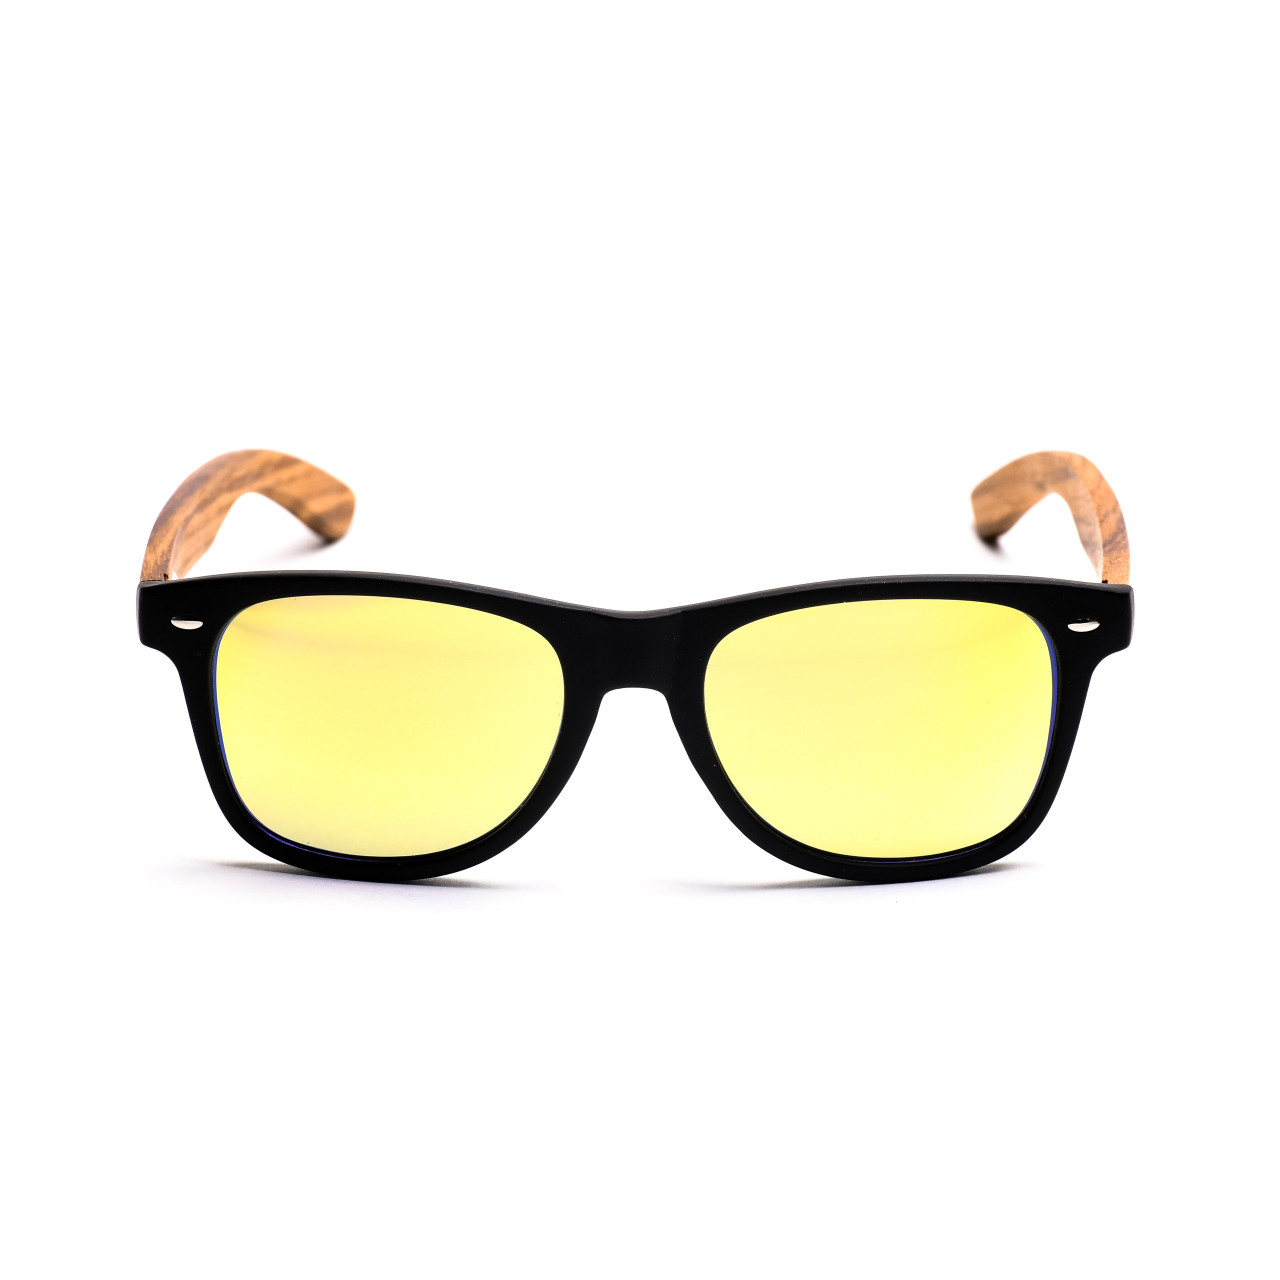 Brýle Classic –  zlaté čočky + černé obroučky + zebra